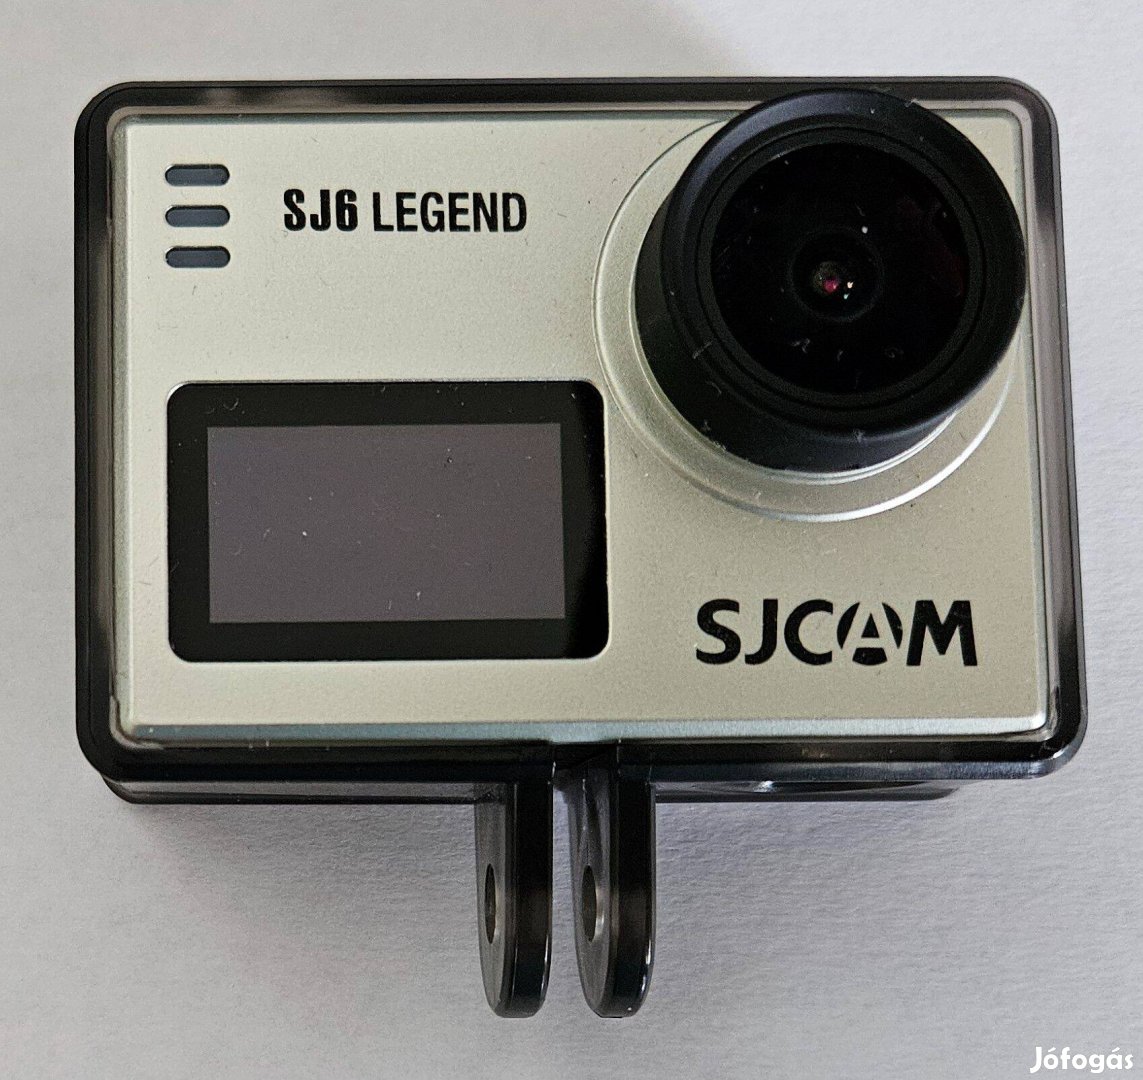 Sjcam S6Legend sportkamera, szinte az összes kiegészítővel